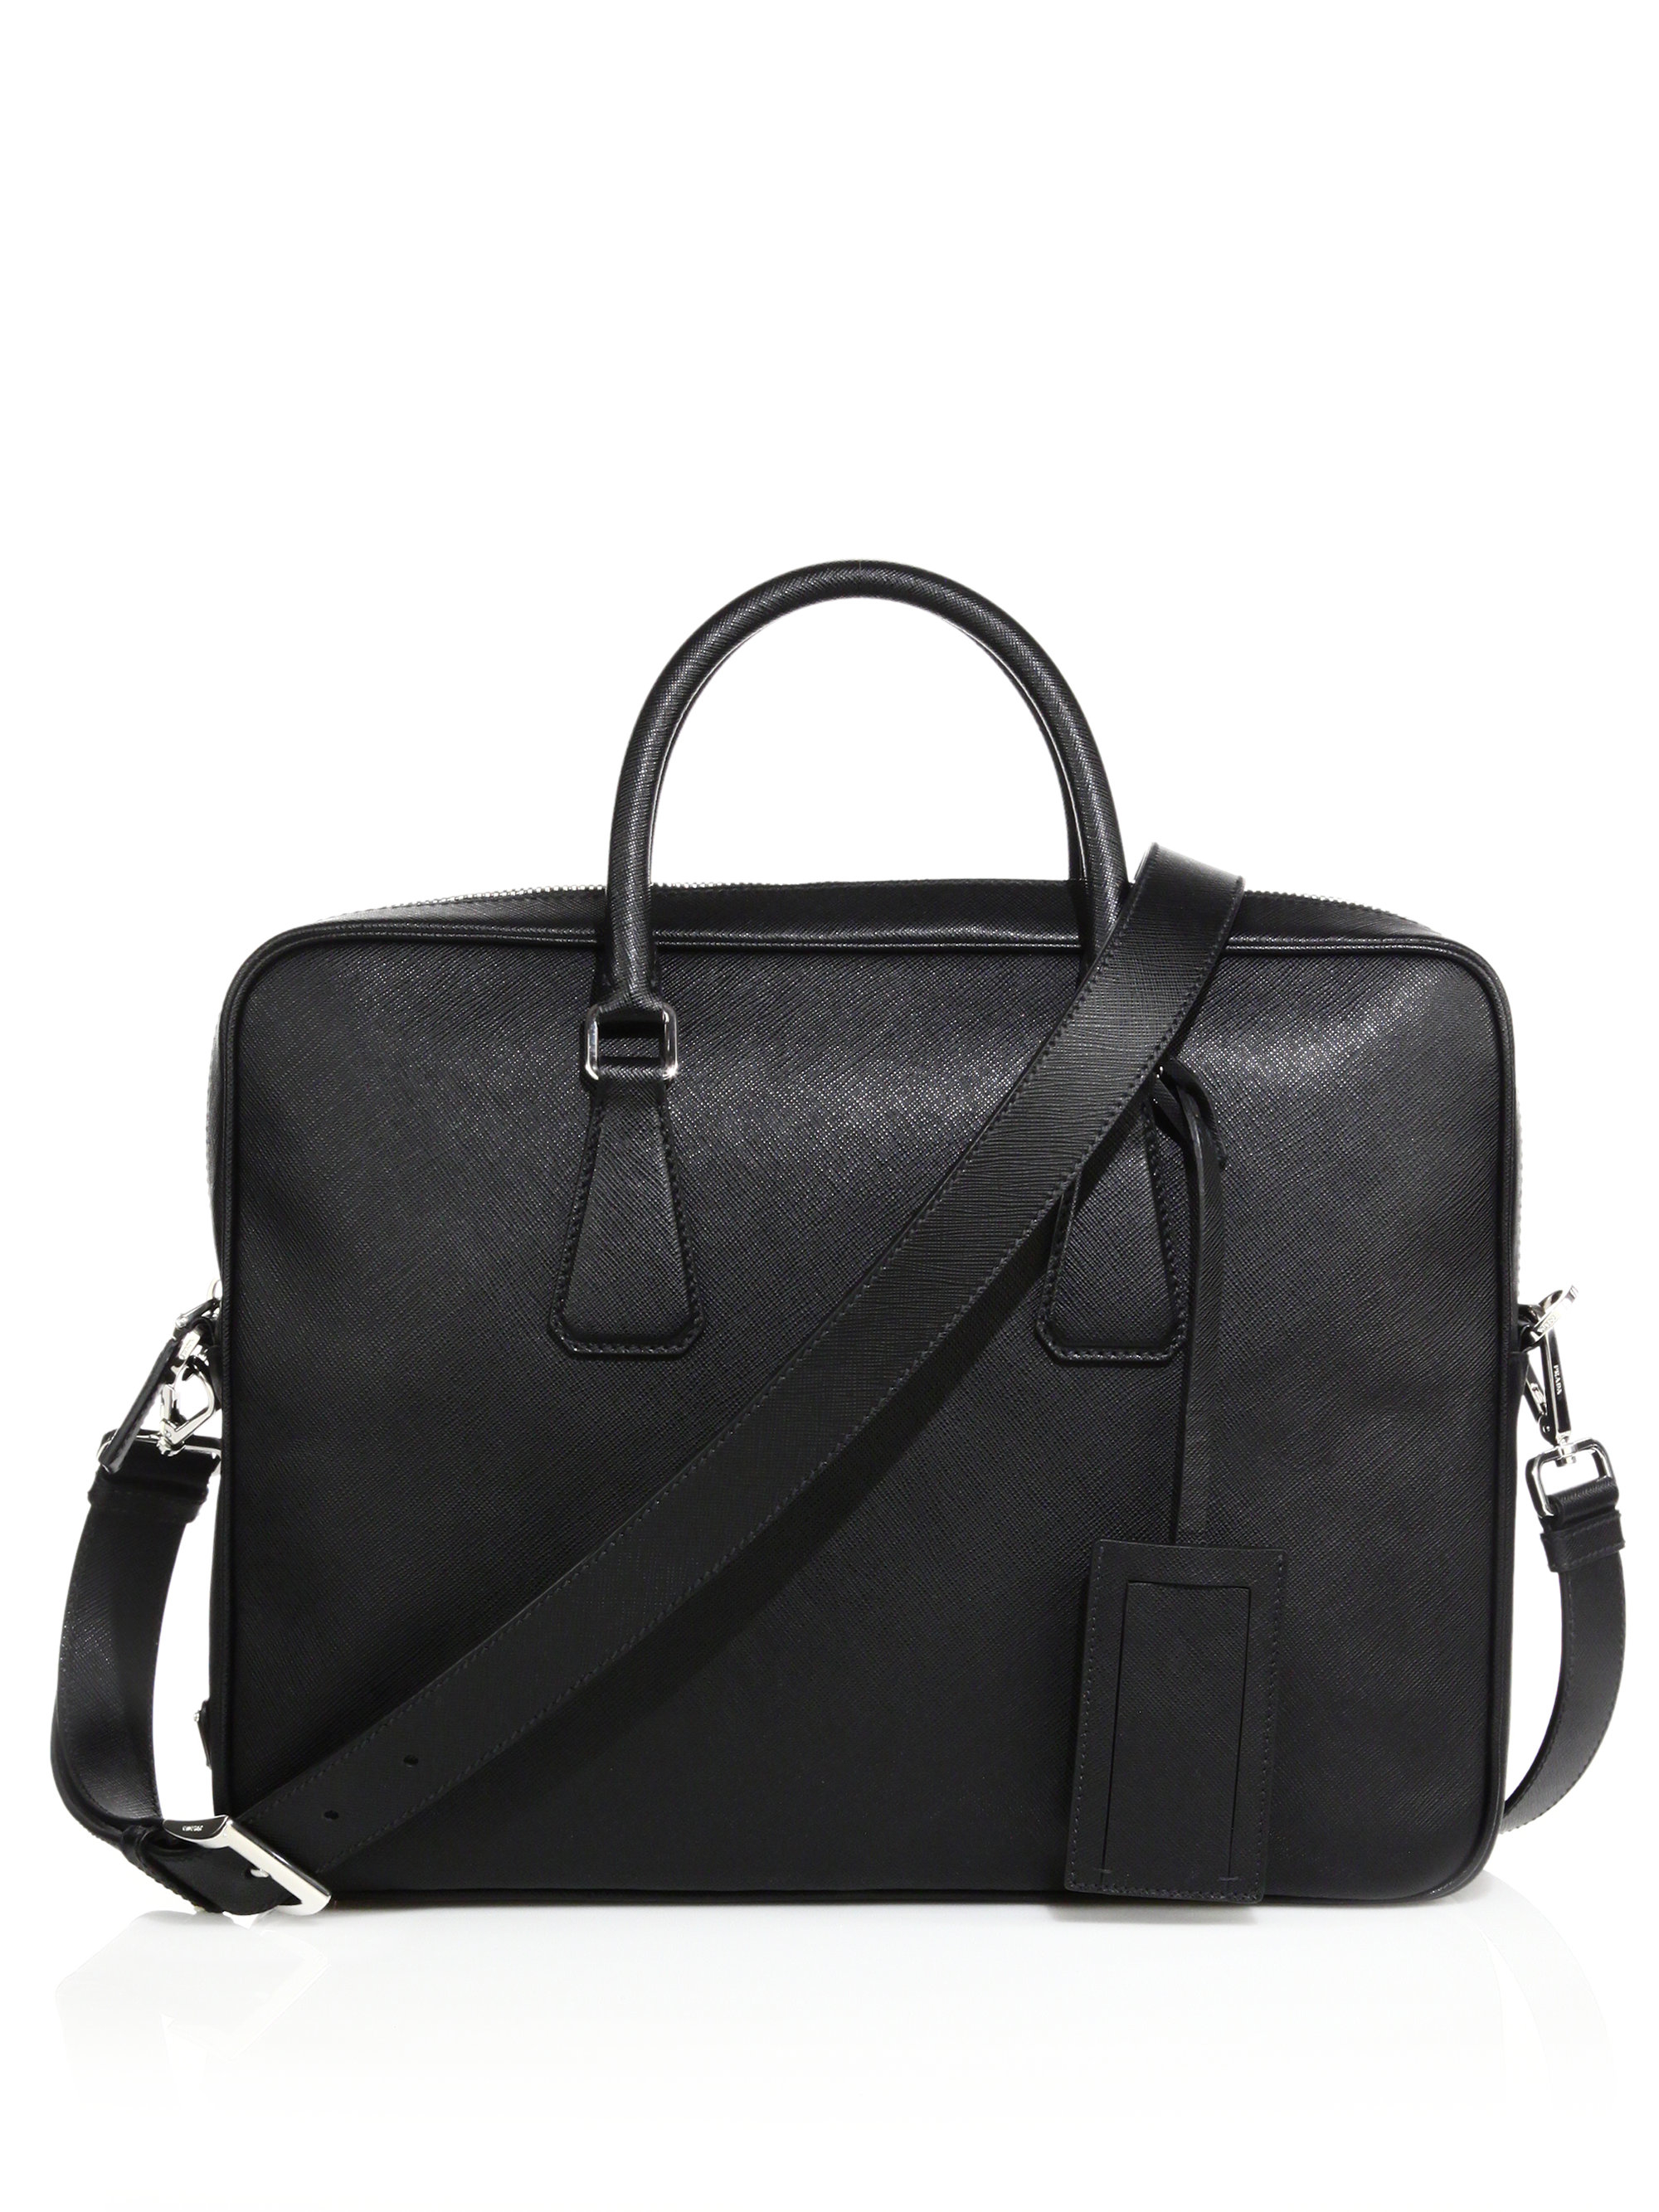 Lyst - Prada Borsa Da Lavoro Leather Briefcase in Black for Men